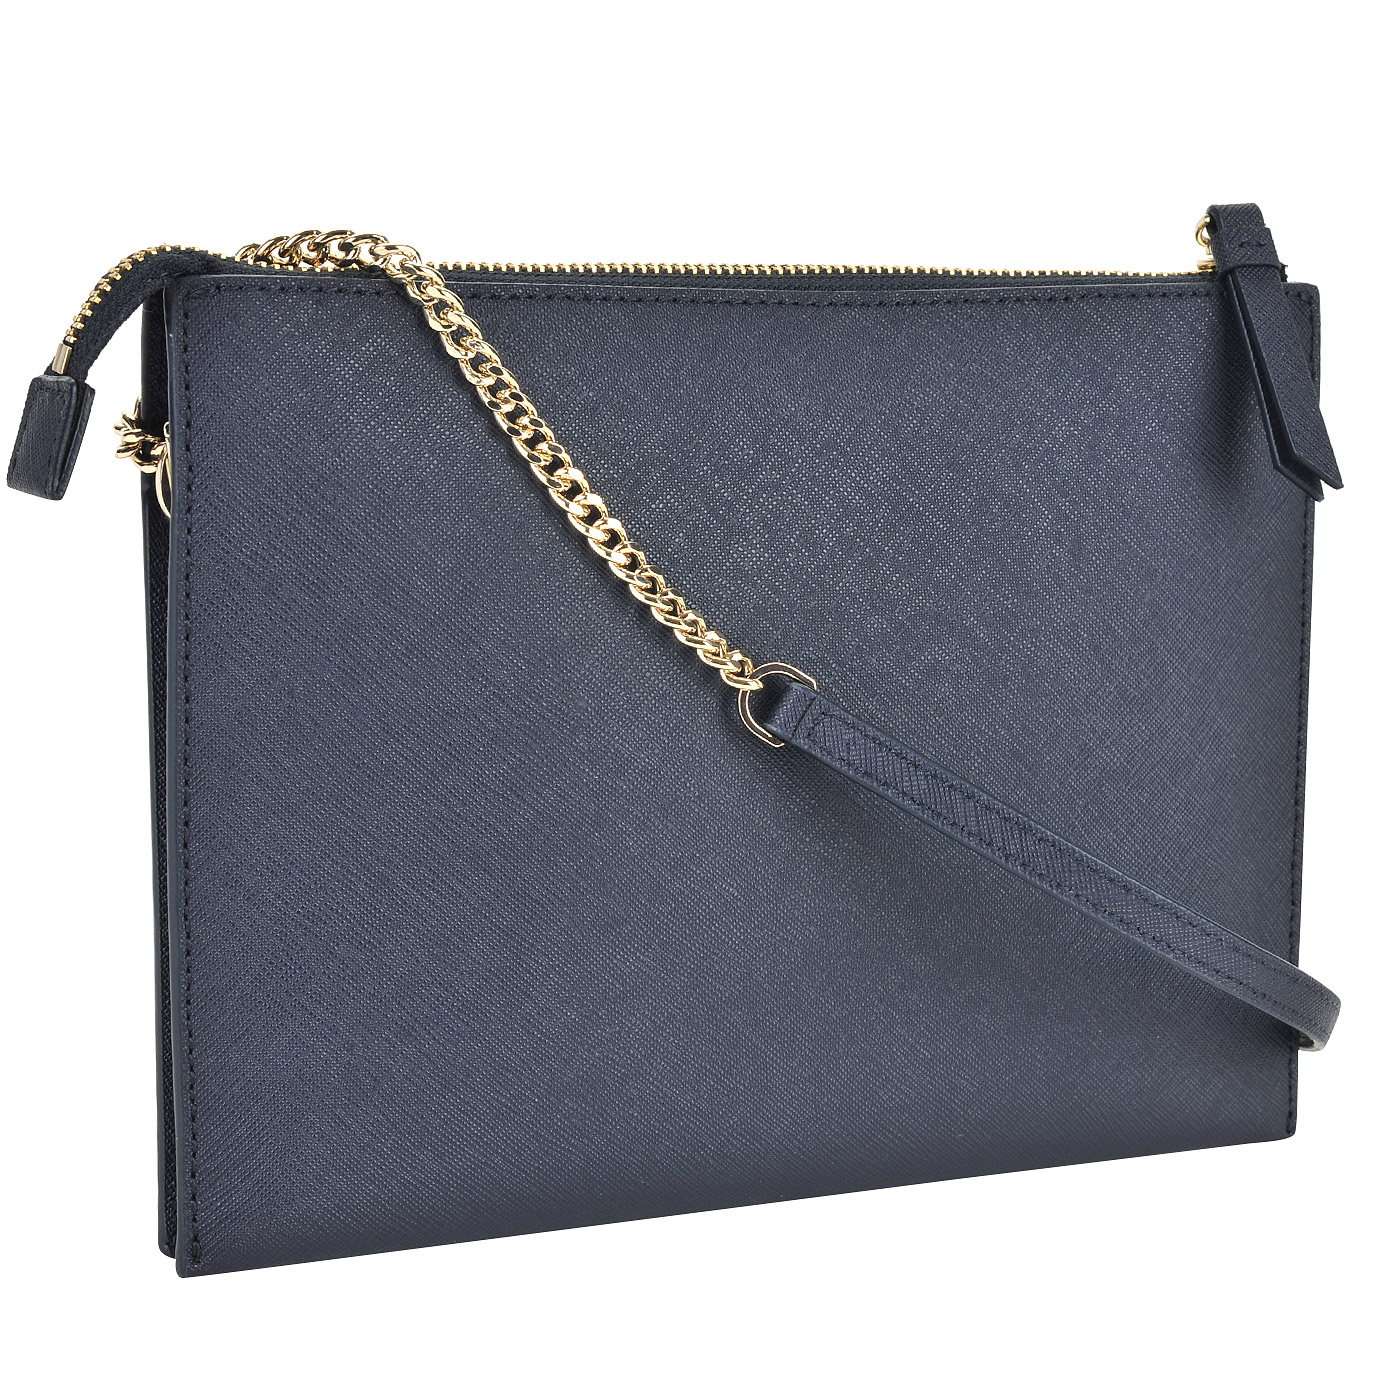 Женская сумочка из сафьяновой синей кожи через плечо DKNY Saffiano